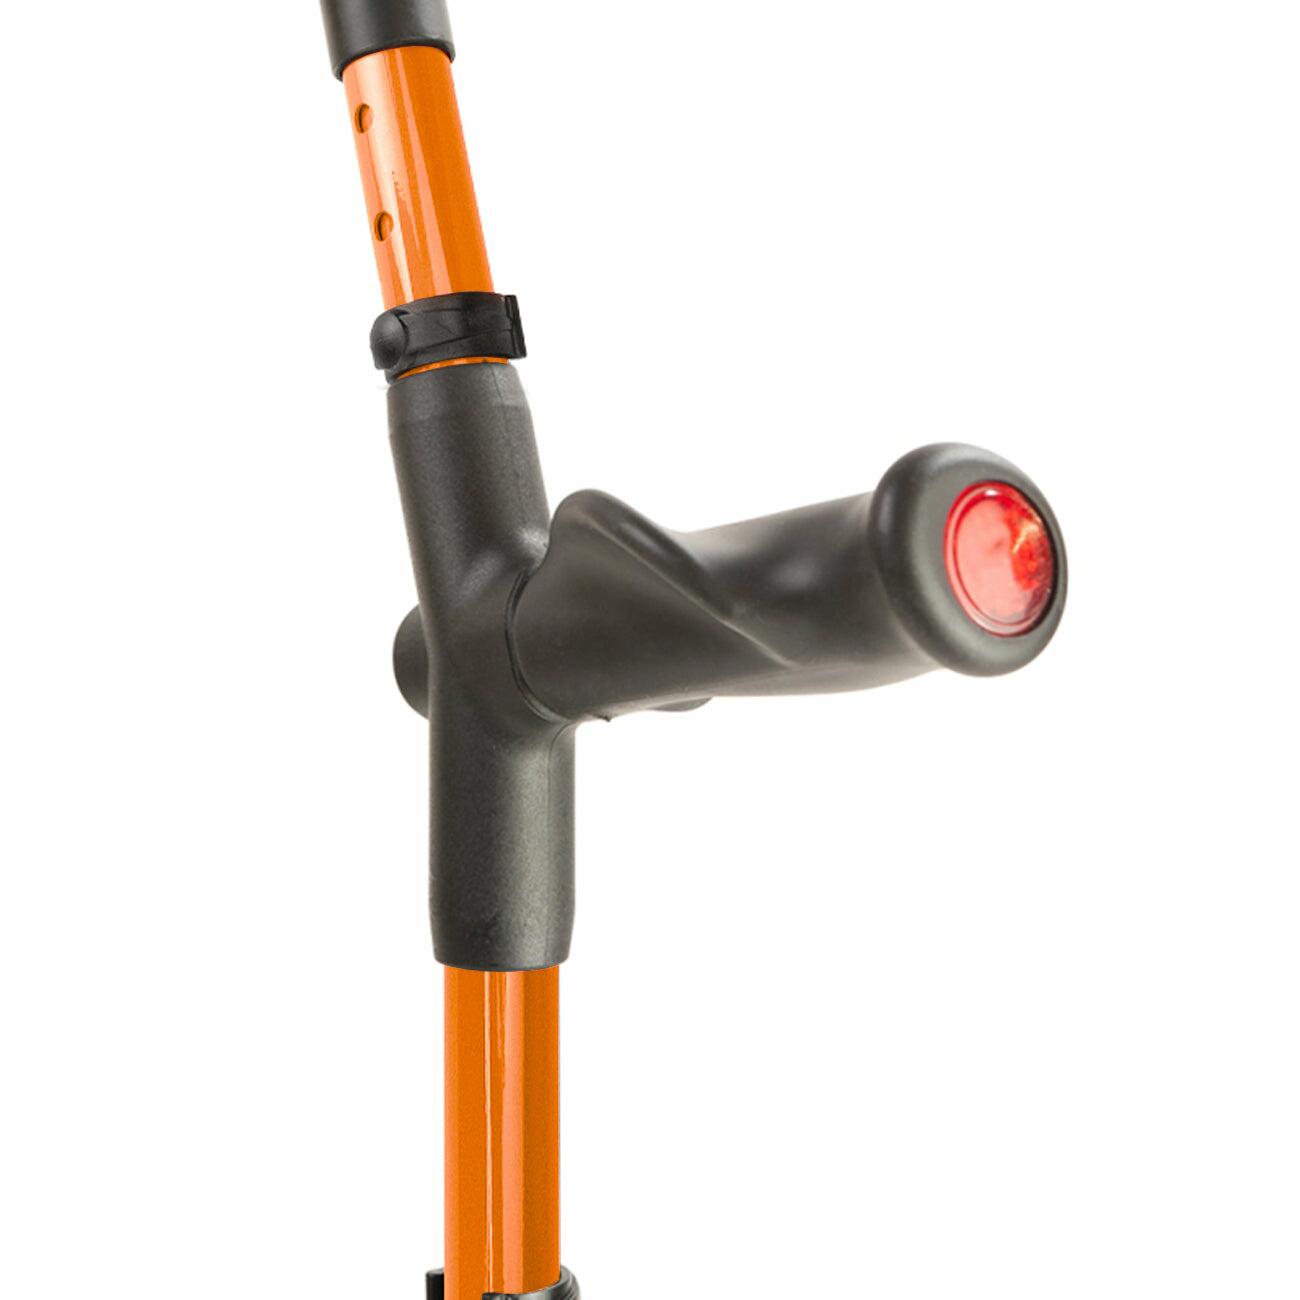 Comfort grip handle of an orange Flexyfoot Comfort Grip Double Adjustable Crutch